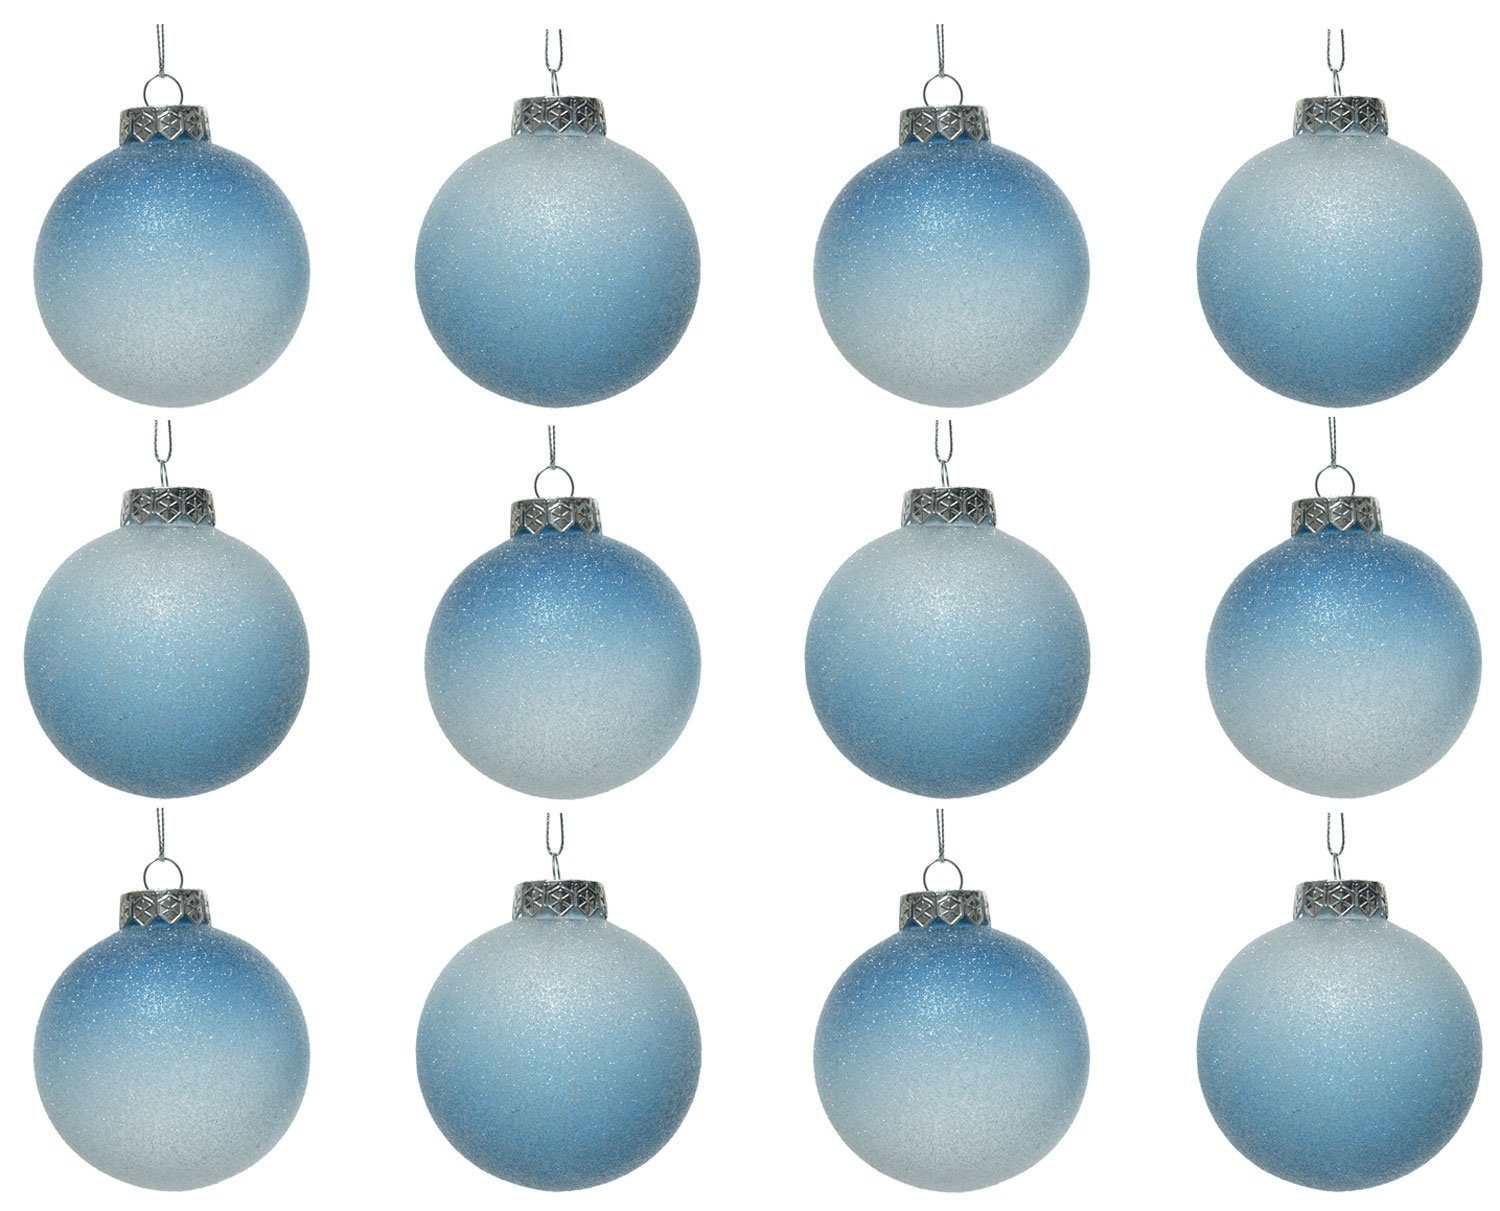 Decoris season decorations Weihnachtsbaumkugel, Weihnachtskugeln Kunststoff Farbverlauf 8cm blau / weiß, 12er Set